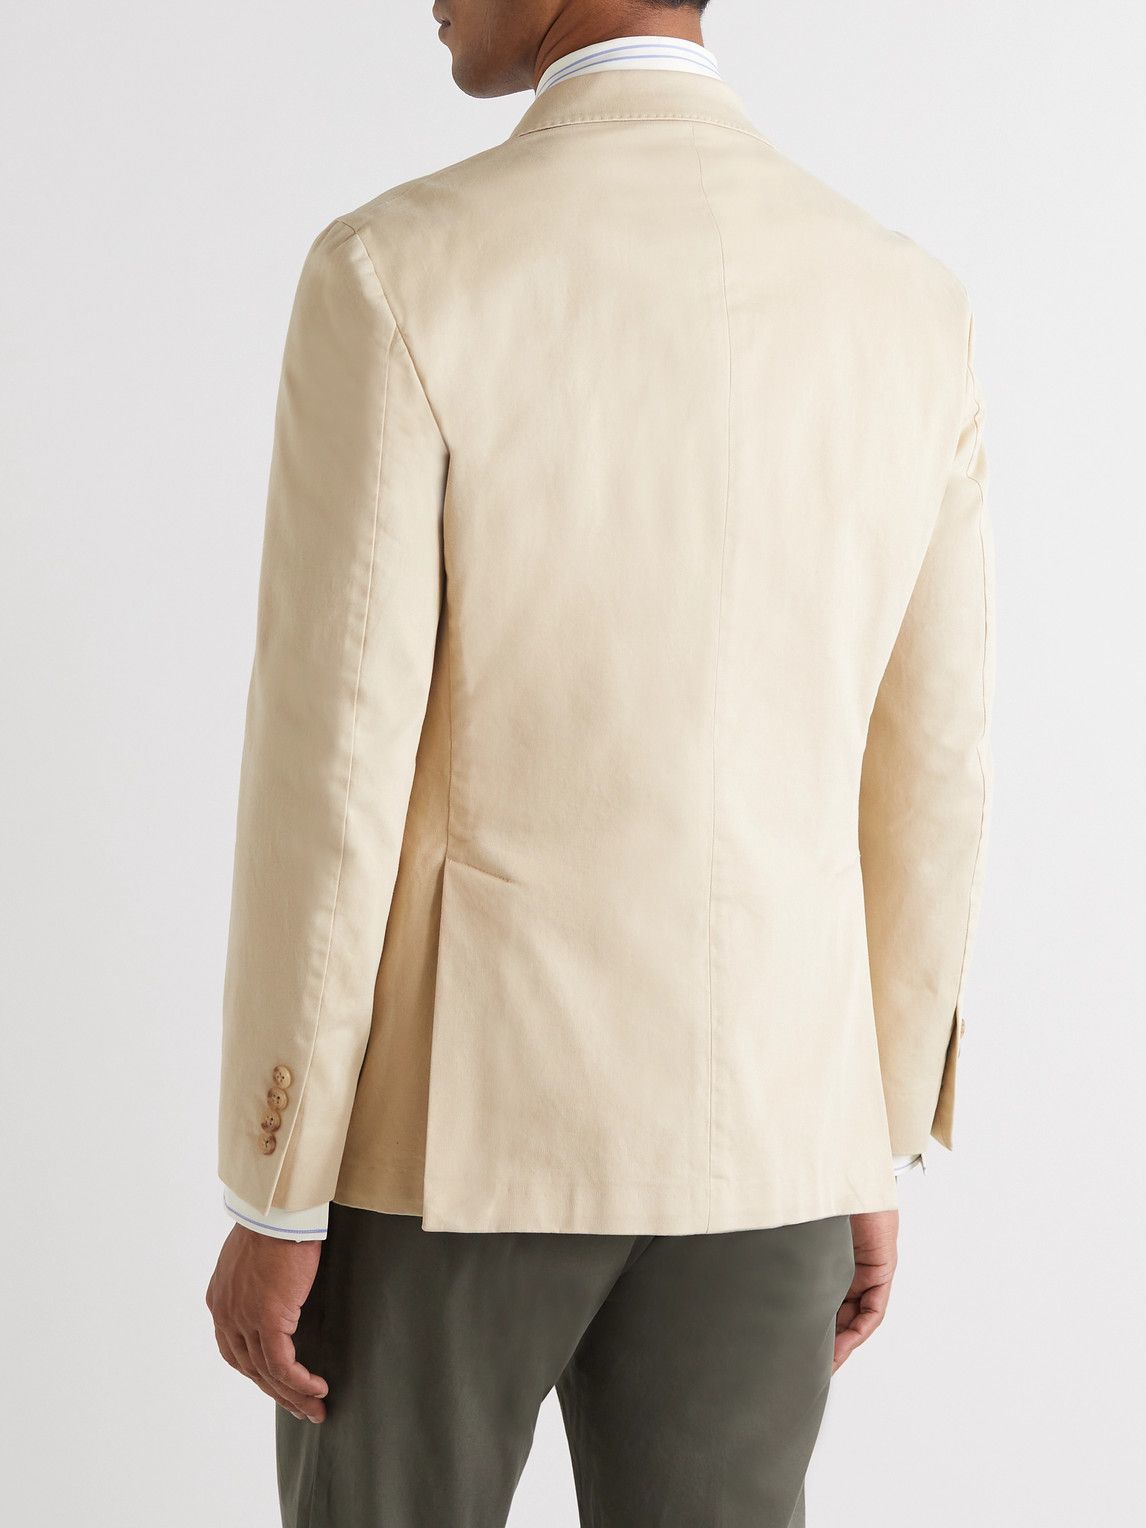 Polo Ralph Lauren - Slim-Fit Unstructured Garment-Dyed Stretch-Cotton Blazer - Neutrals